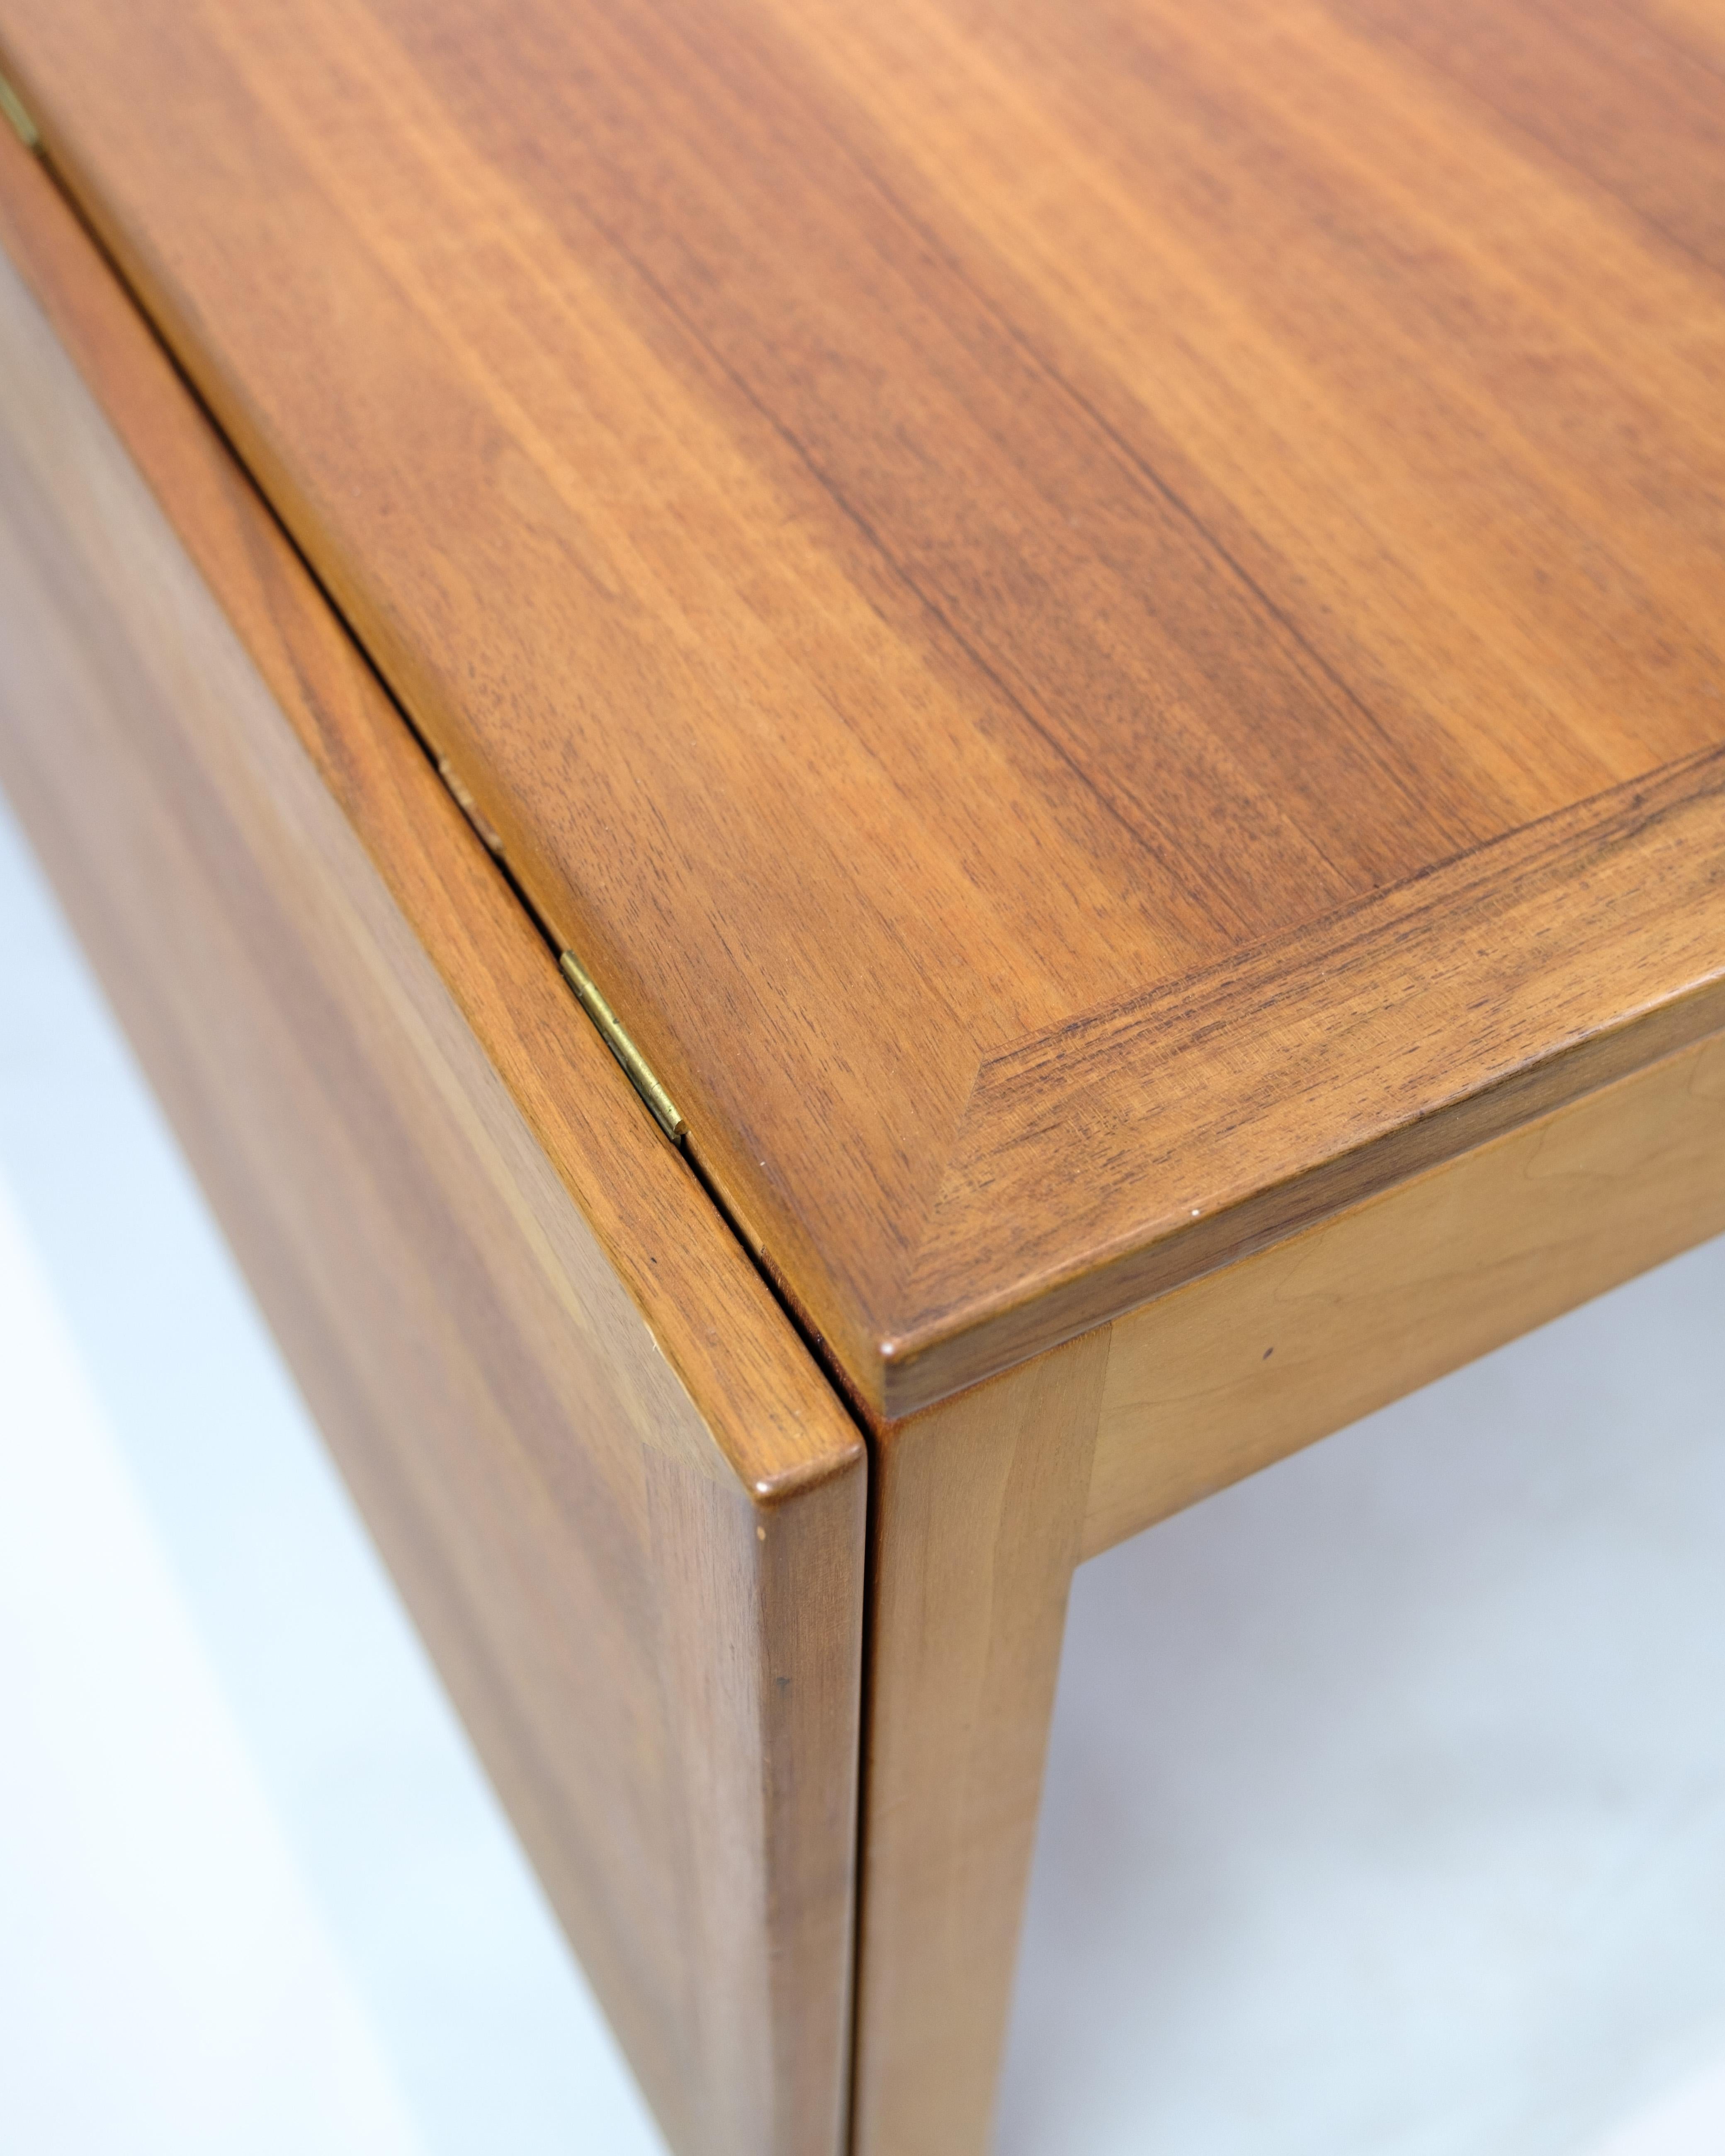 Dieser Couchtisch aus Mahagoni / Nussbaum ist das Modell 5362, entworfen von dem berühmten dänischen Möbeldesigner Børge Mogensen und hergestellt von Frederica Furniture.

Der Tisch hat Klappen, die je nach Bedarf hoch- oder heruntergeklappt werden